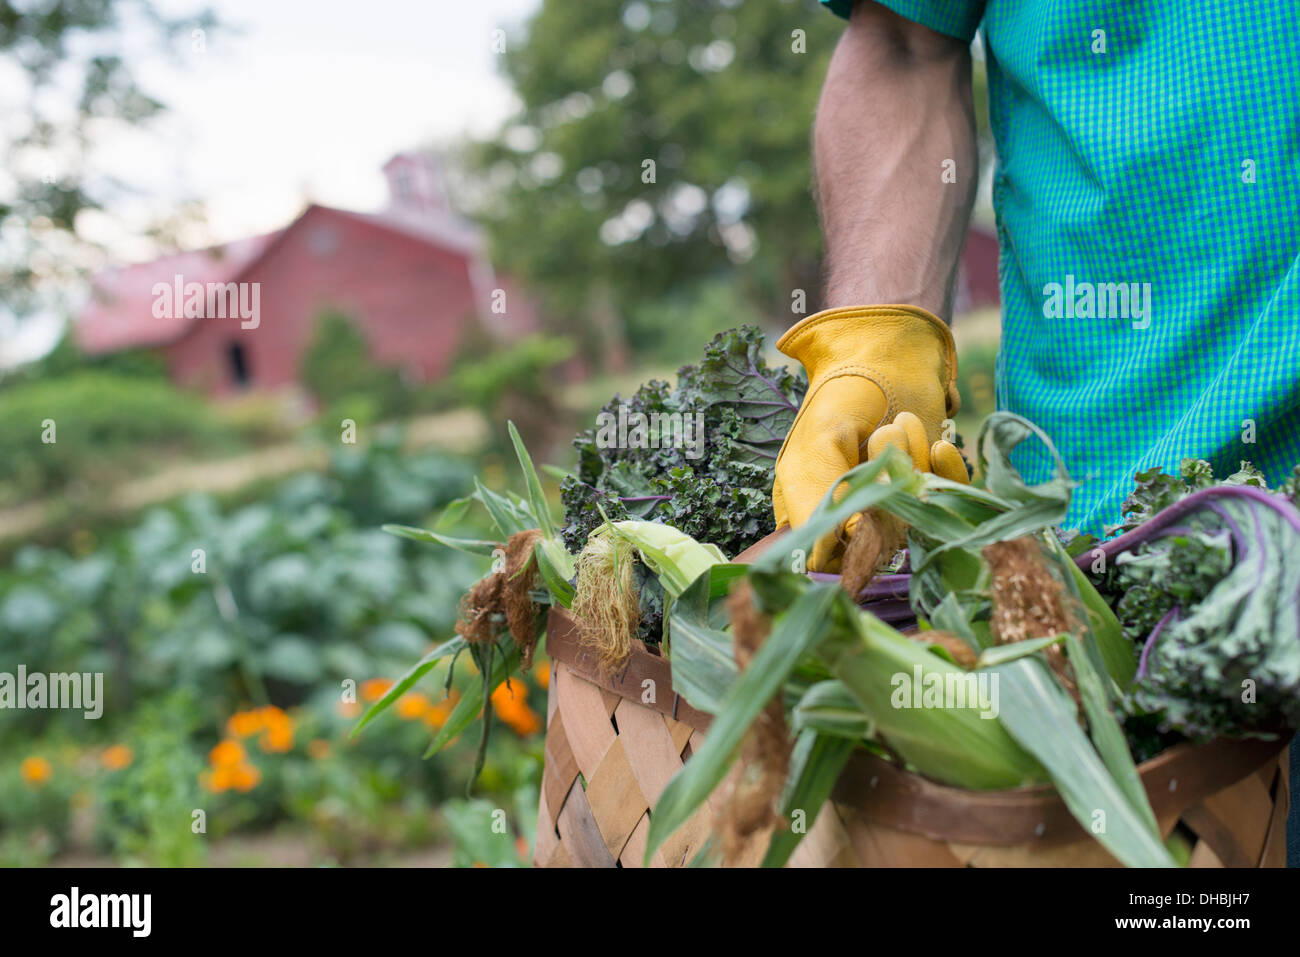 Una huerta orgánica en una granja. Un hombre que lleva una cesta de recién cosechados, la mazorca de maíz. Foto de stock